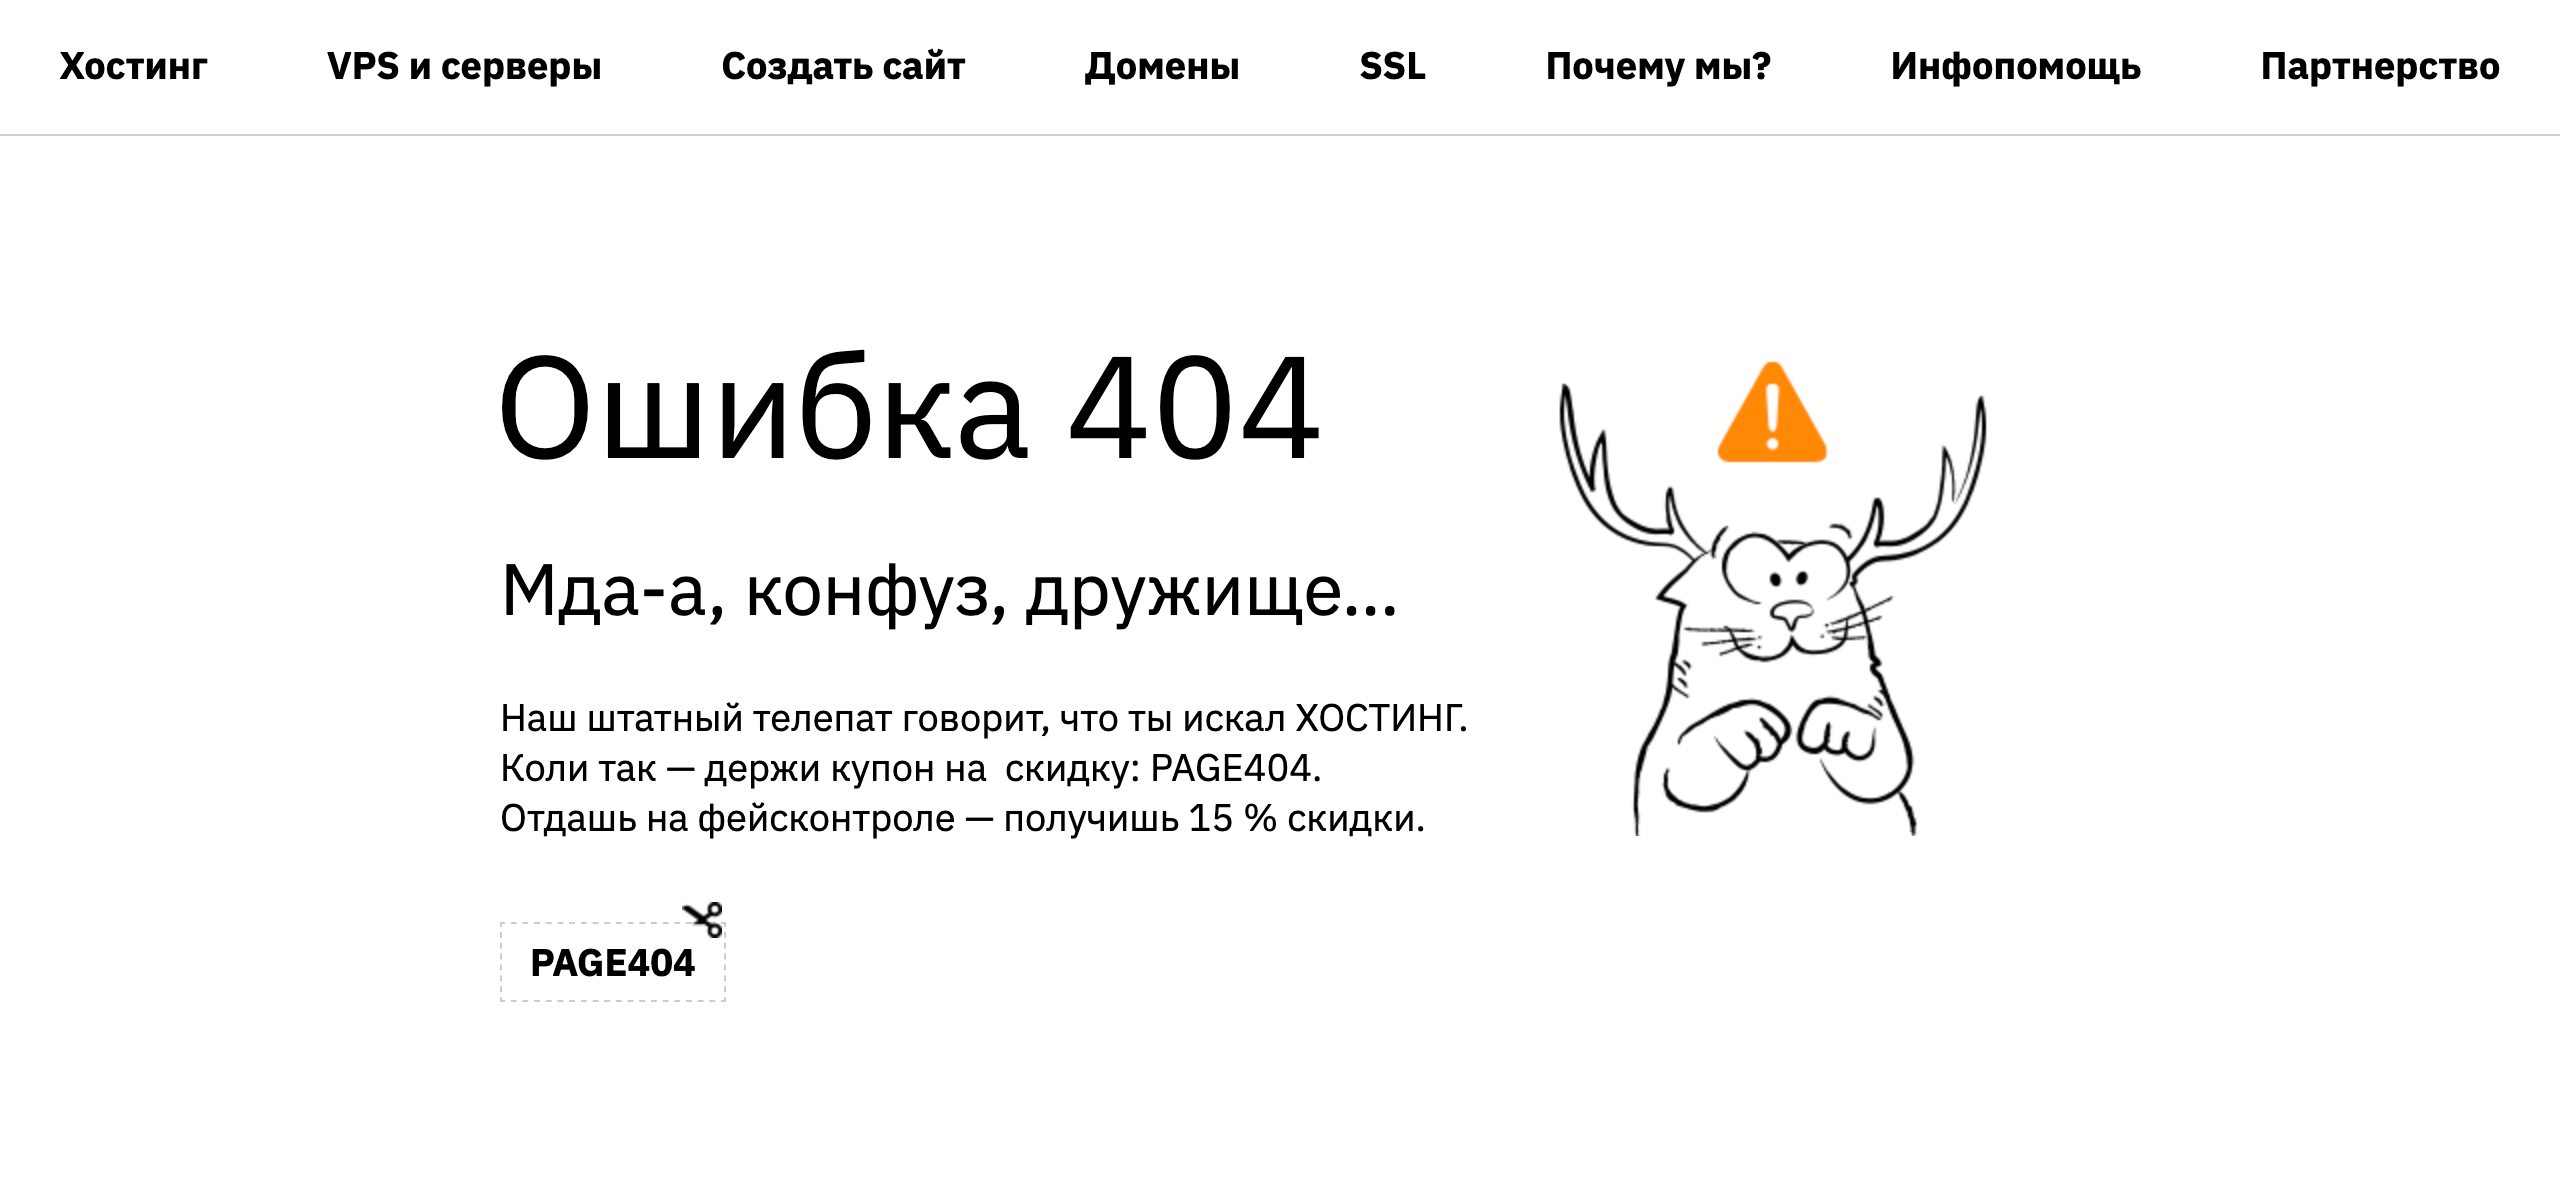 Ошибка 404: что это и как может выглядеть. Пример №1 — сайт HOSTiQ